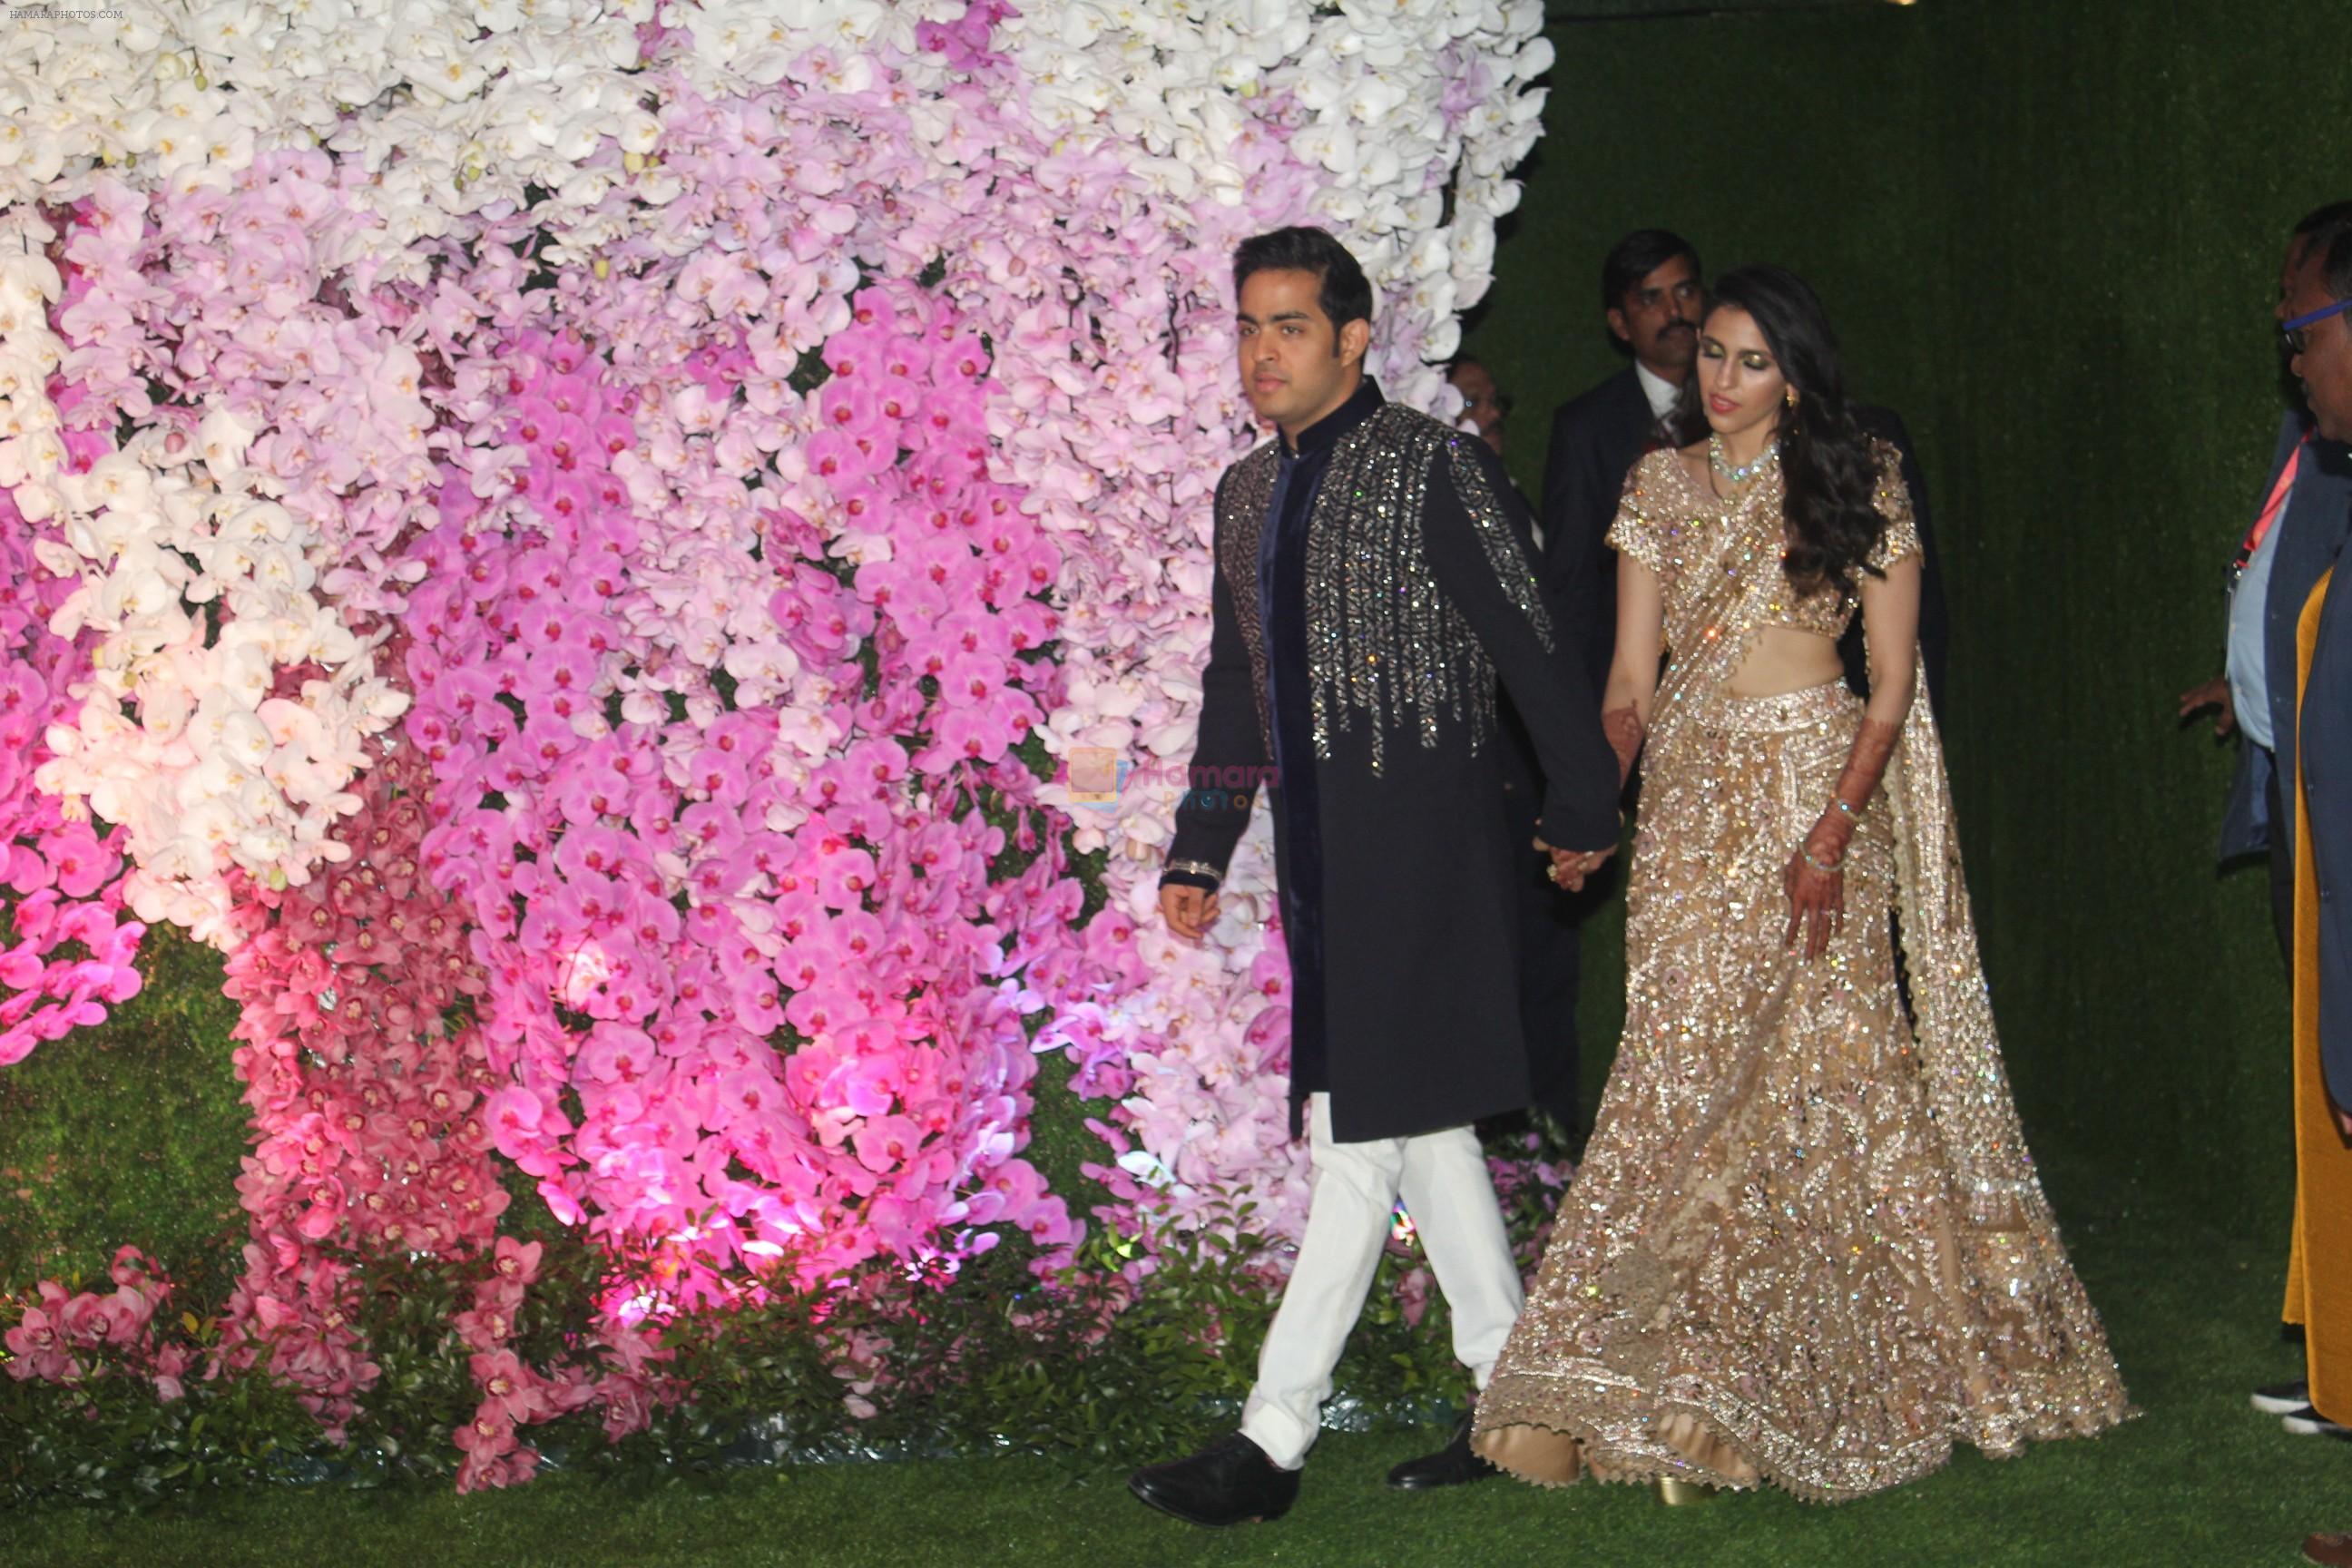 Akash Ambani & Shloka Mehta wedding in Jio World Centre bkc on 10th March 2019